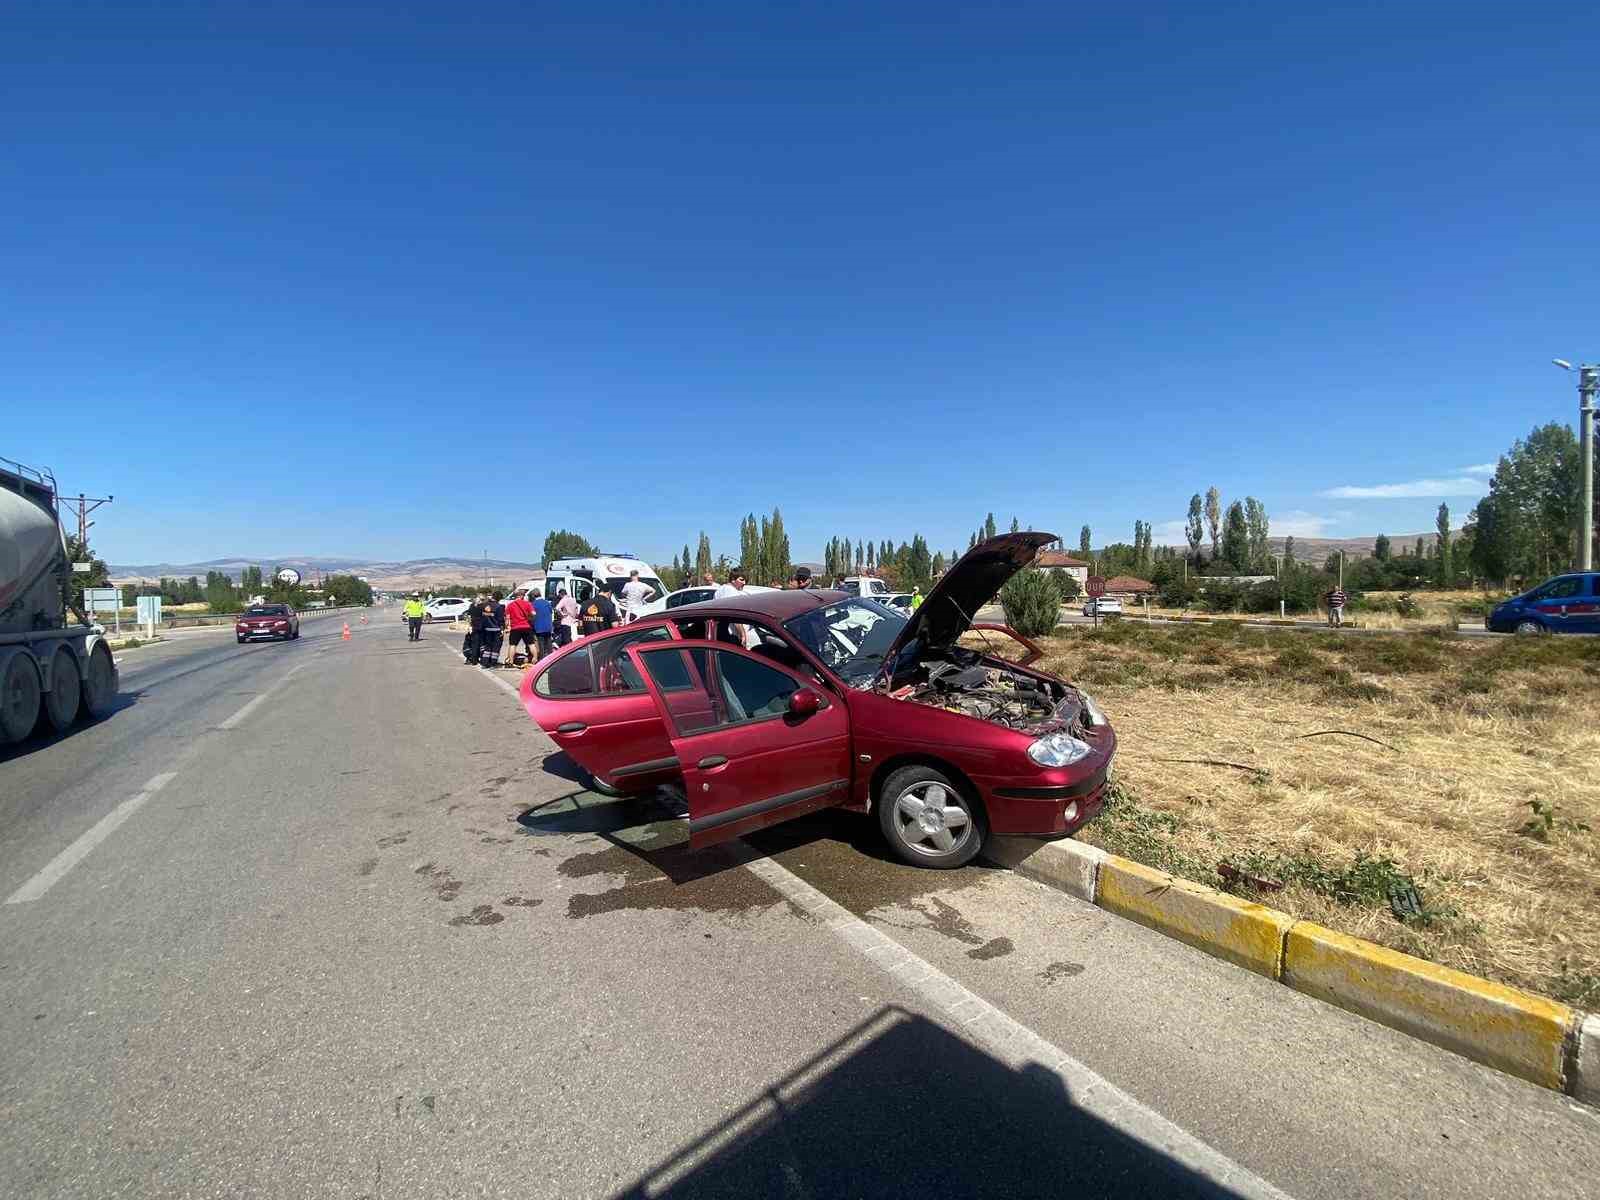 İl Özel İdaresine ait arazi aracıyla otomobilin karıştığı kazada 5 kişi yaralandı